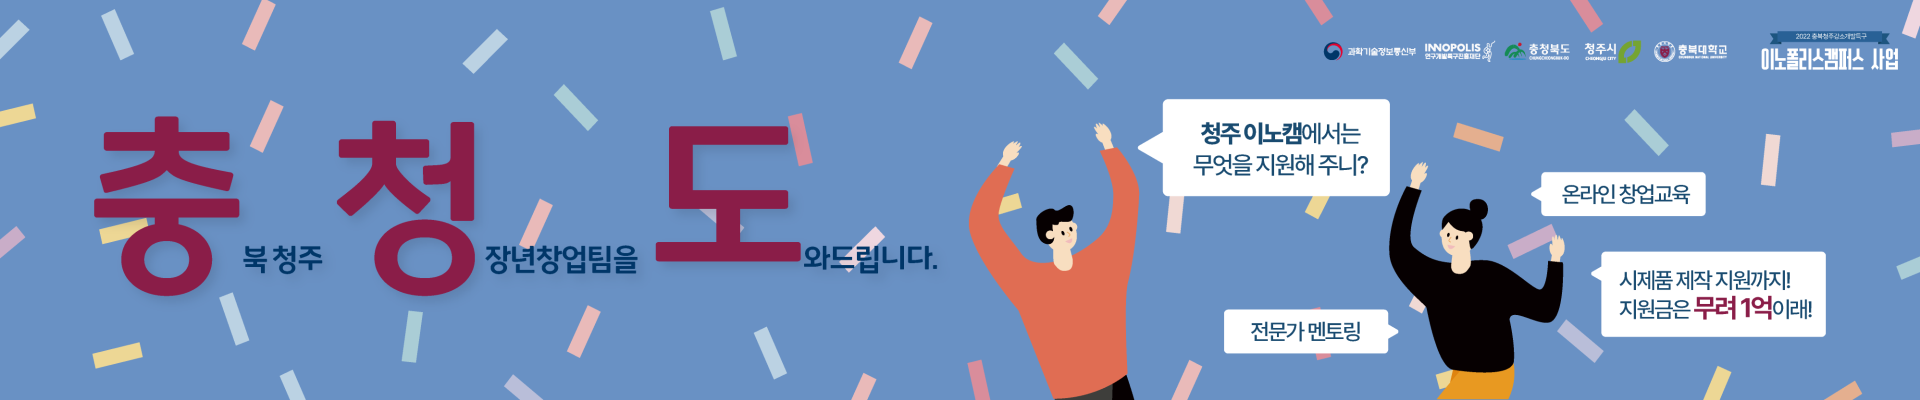 충북청주강소개발특구 이노폴리스캠퍼스 사업 참가자 모집